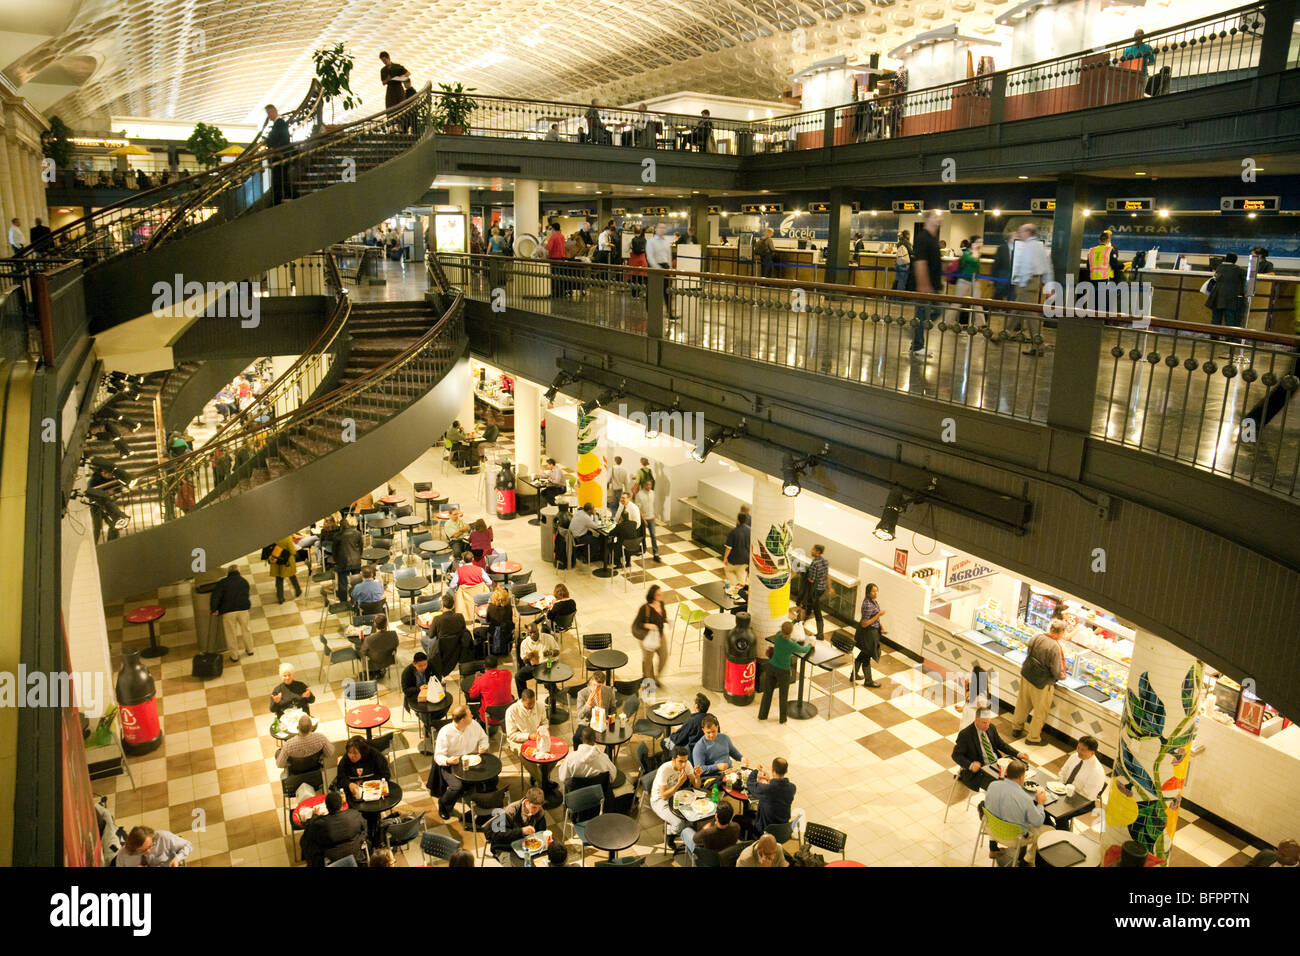 Menschen Essen in einem Café, Union Station Shopping Mall, Washington DC USA Stockfoto